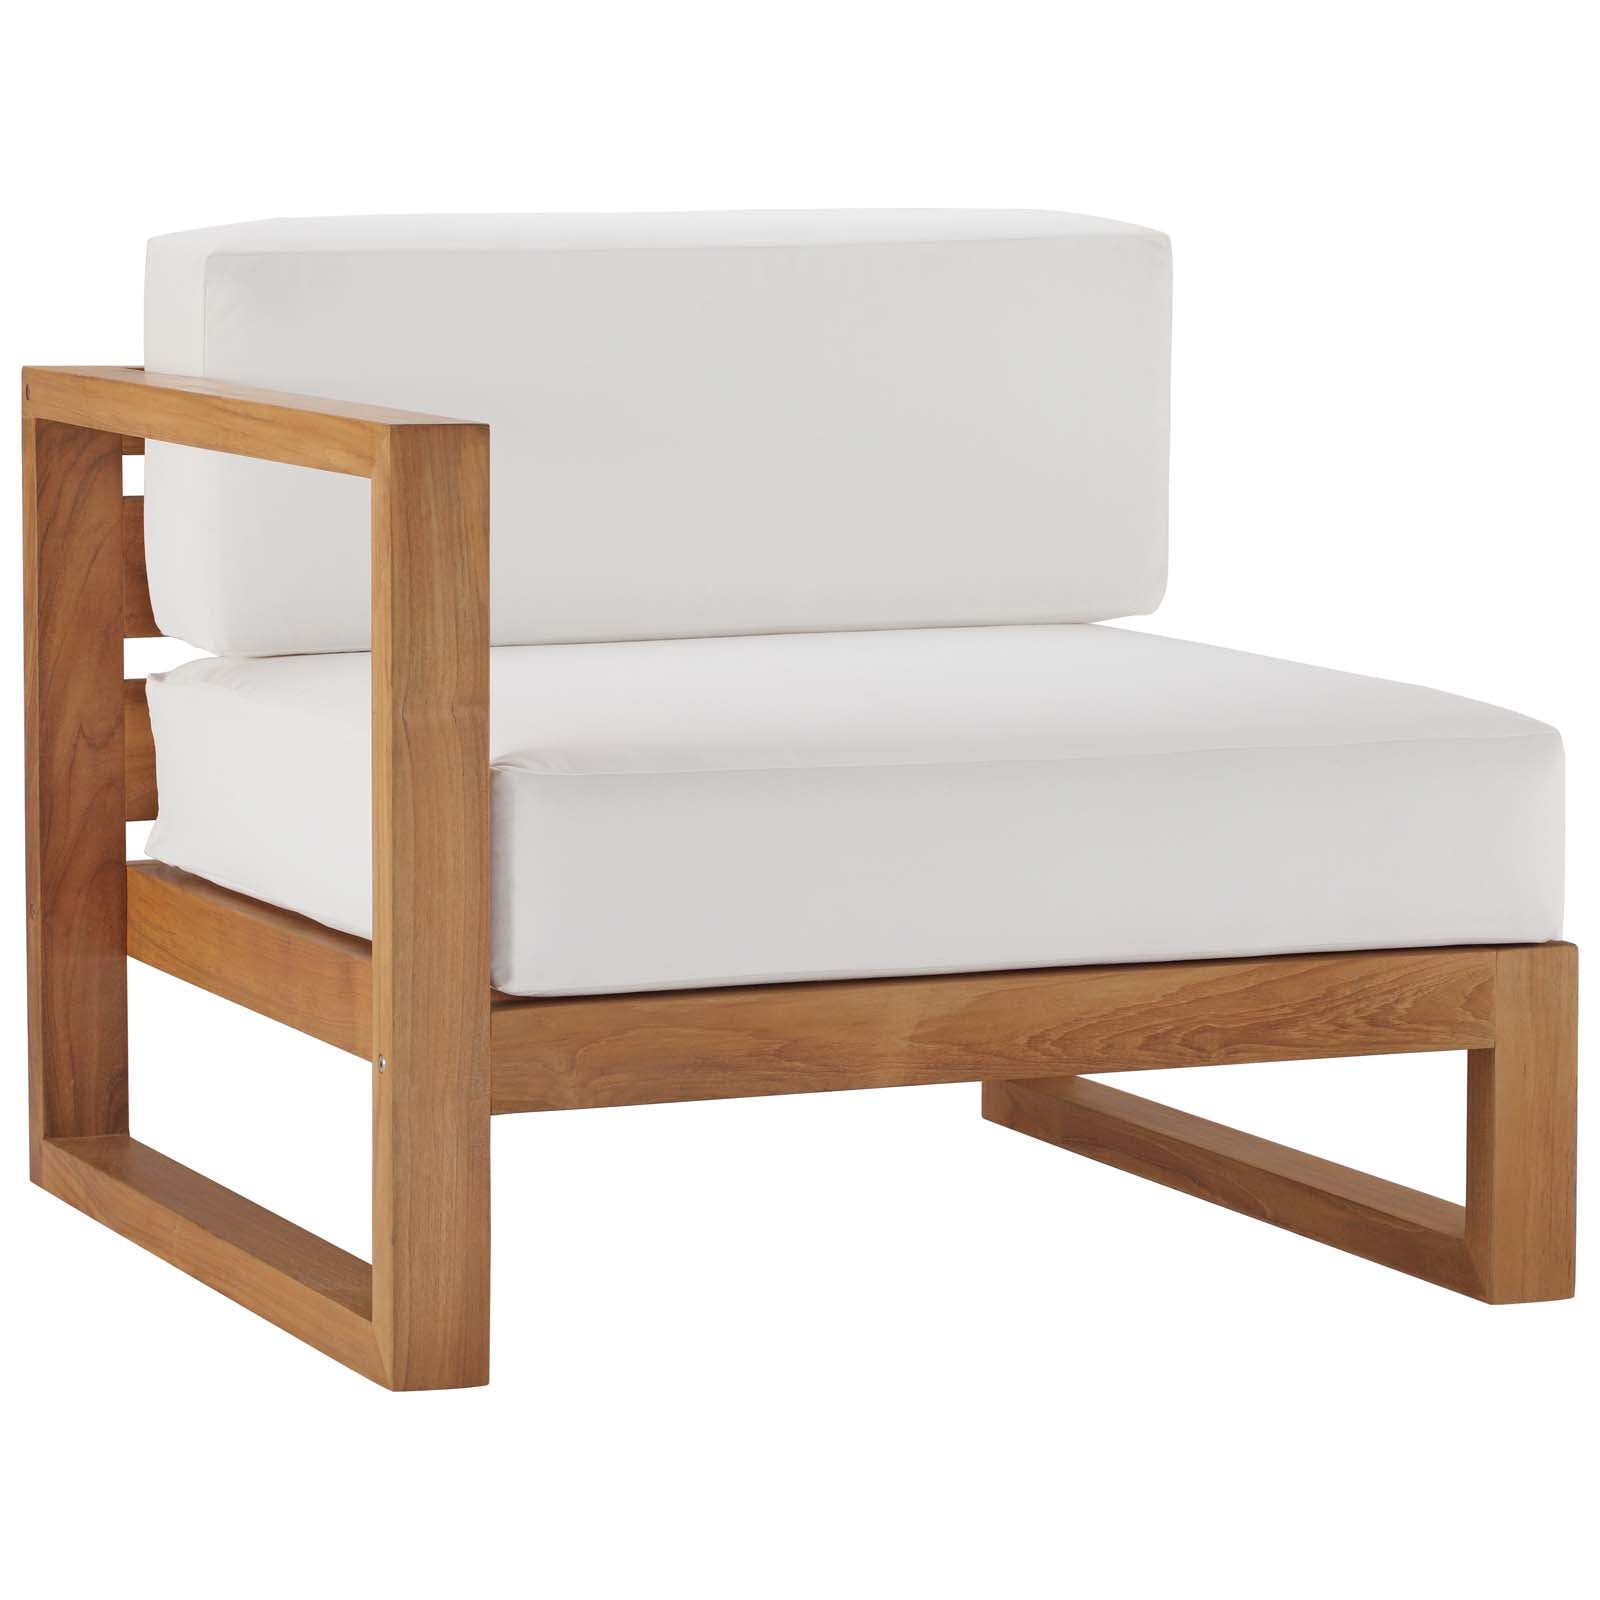 Upland Outdoor Patio Teak Wood 4-Piece Sectional Sofa Set